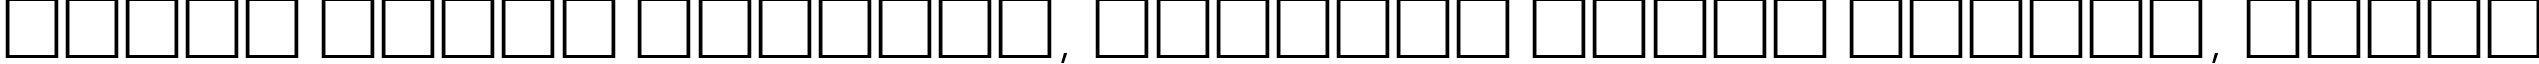 Пример написания шрифтом BauhausLightCTT текста на белорусском